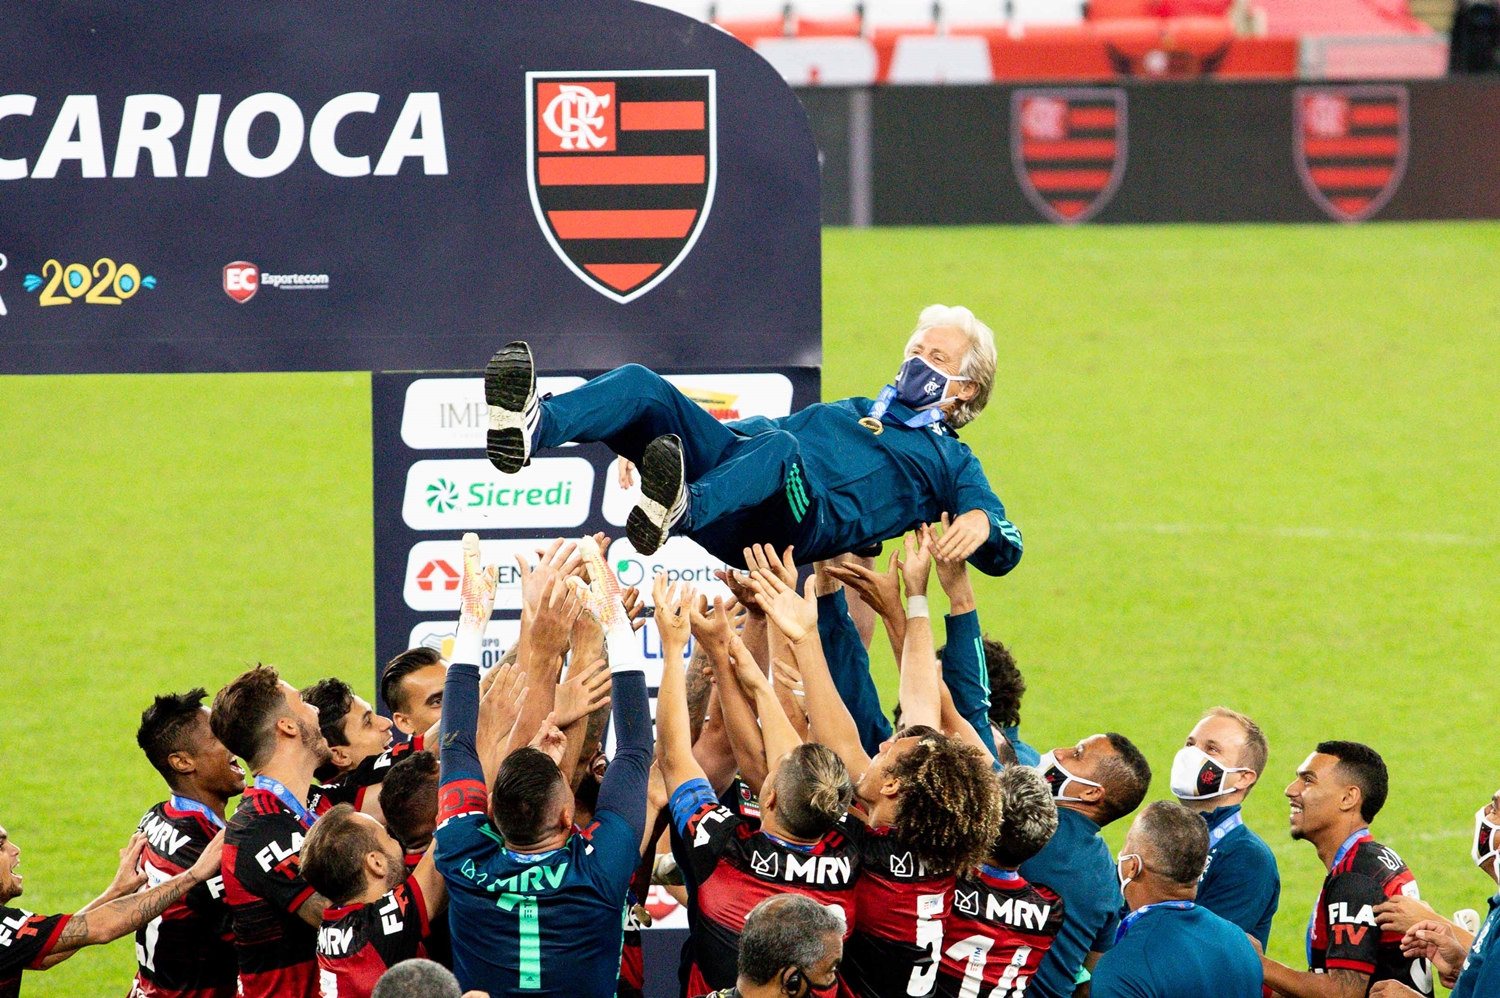 Jogadores comemoram título do Campeonato Carioca 2020